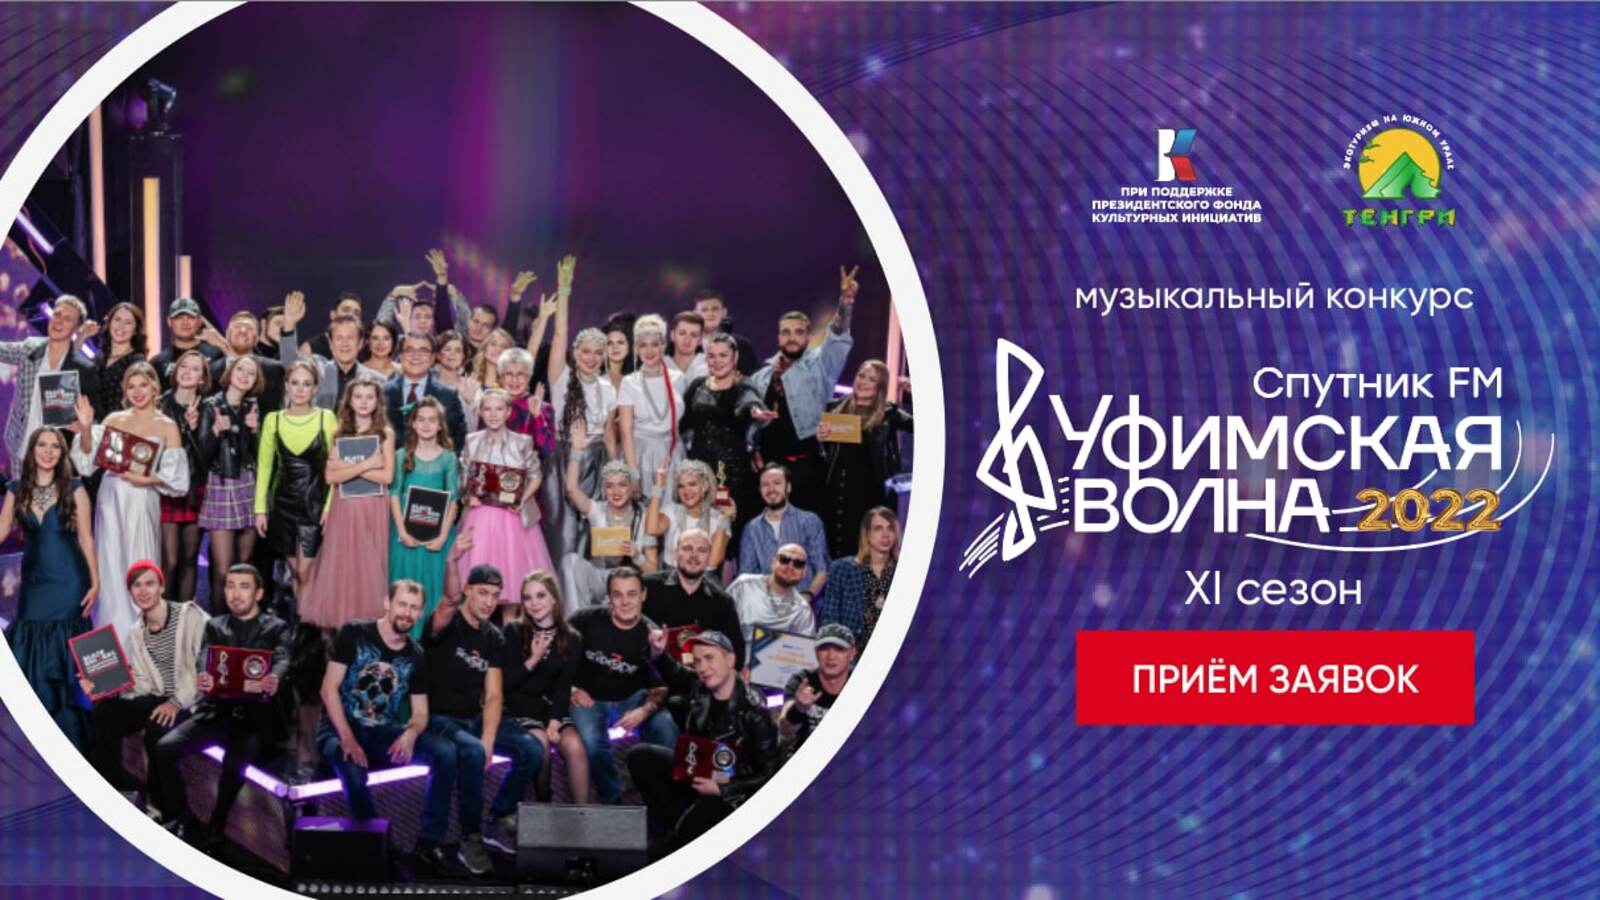 Продолжается прием заявок на музыкальный конкурс "Уфимская Волна 2022".